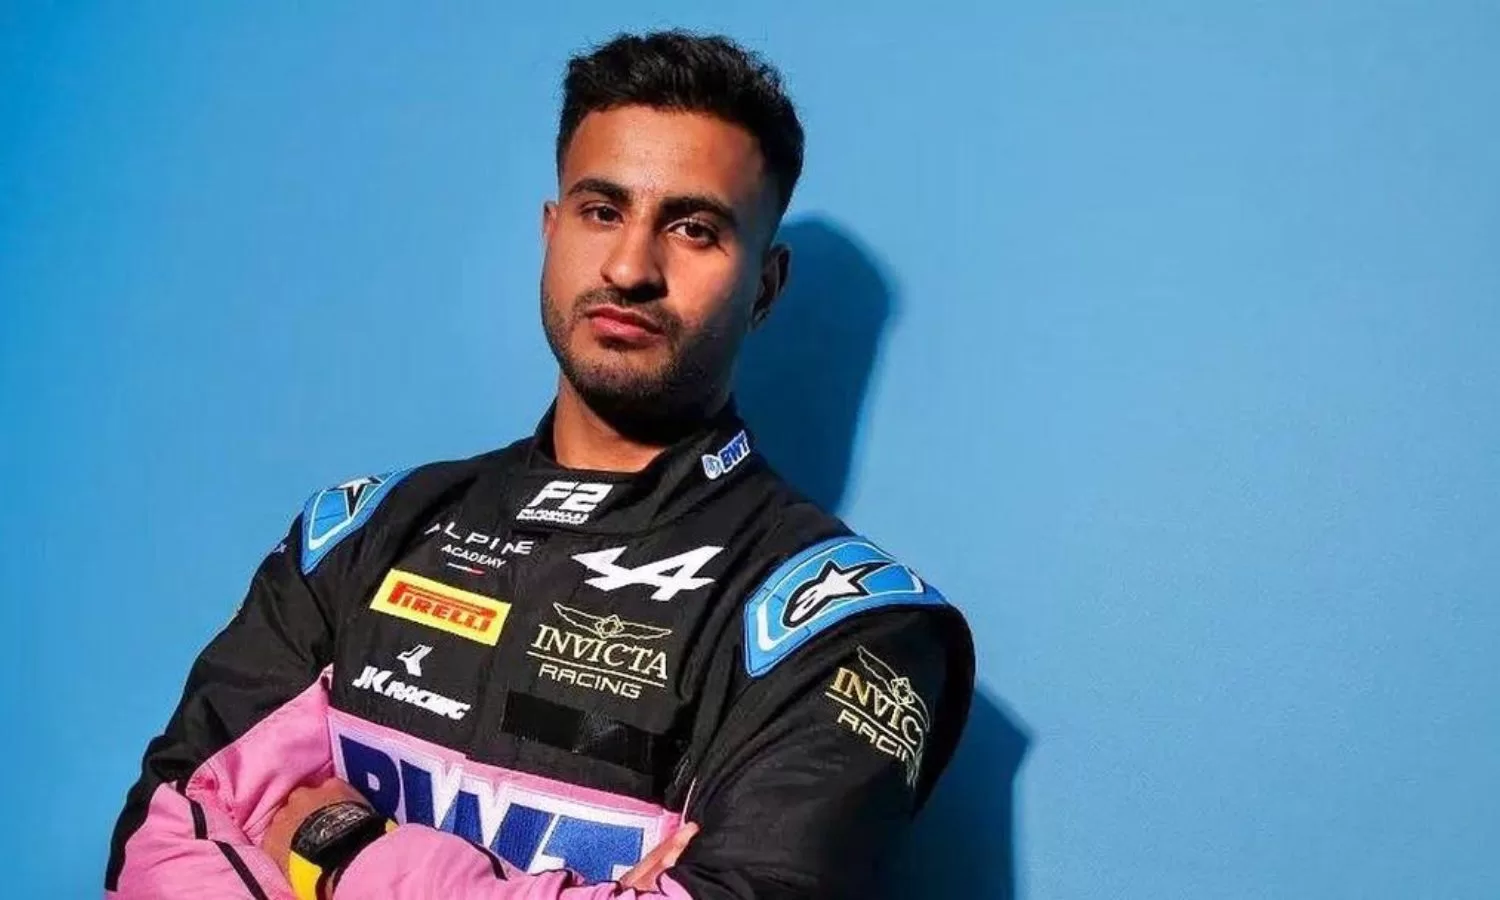 TVS Racing announces sponsorship for F2 driver Kush Maini